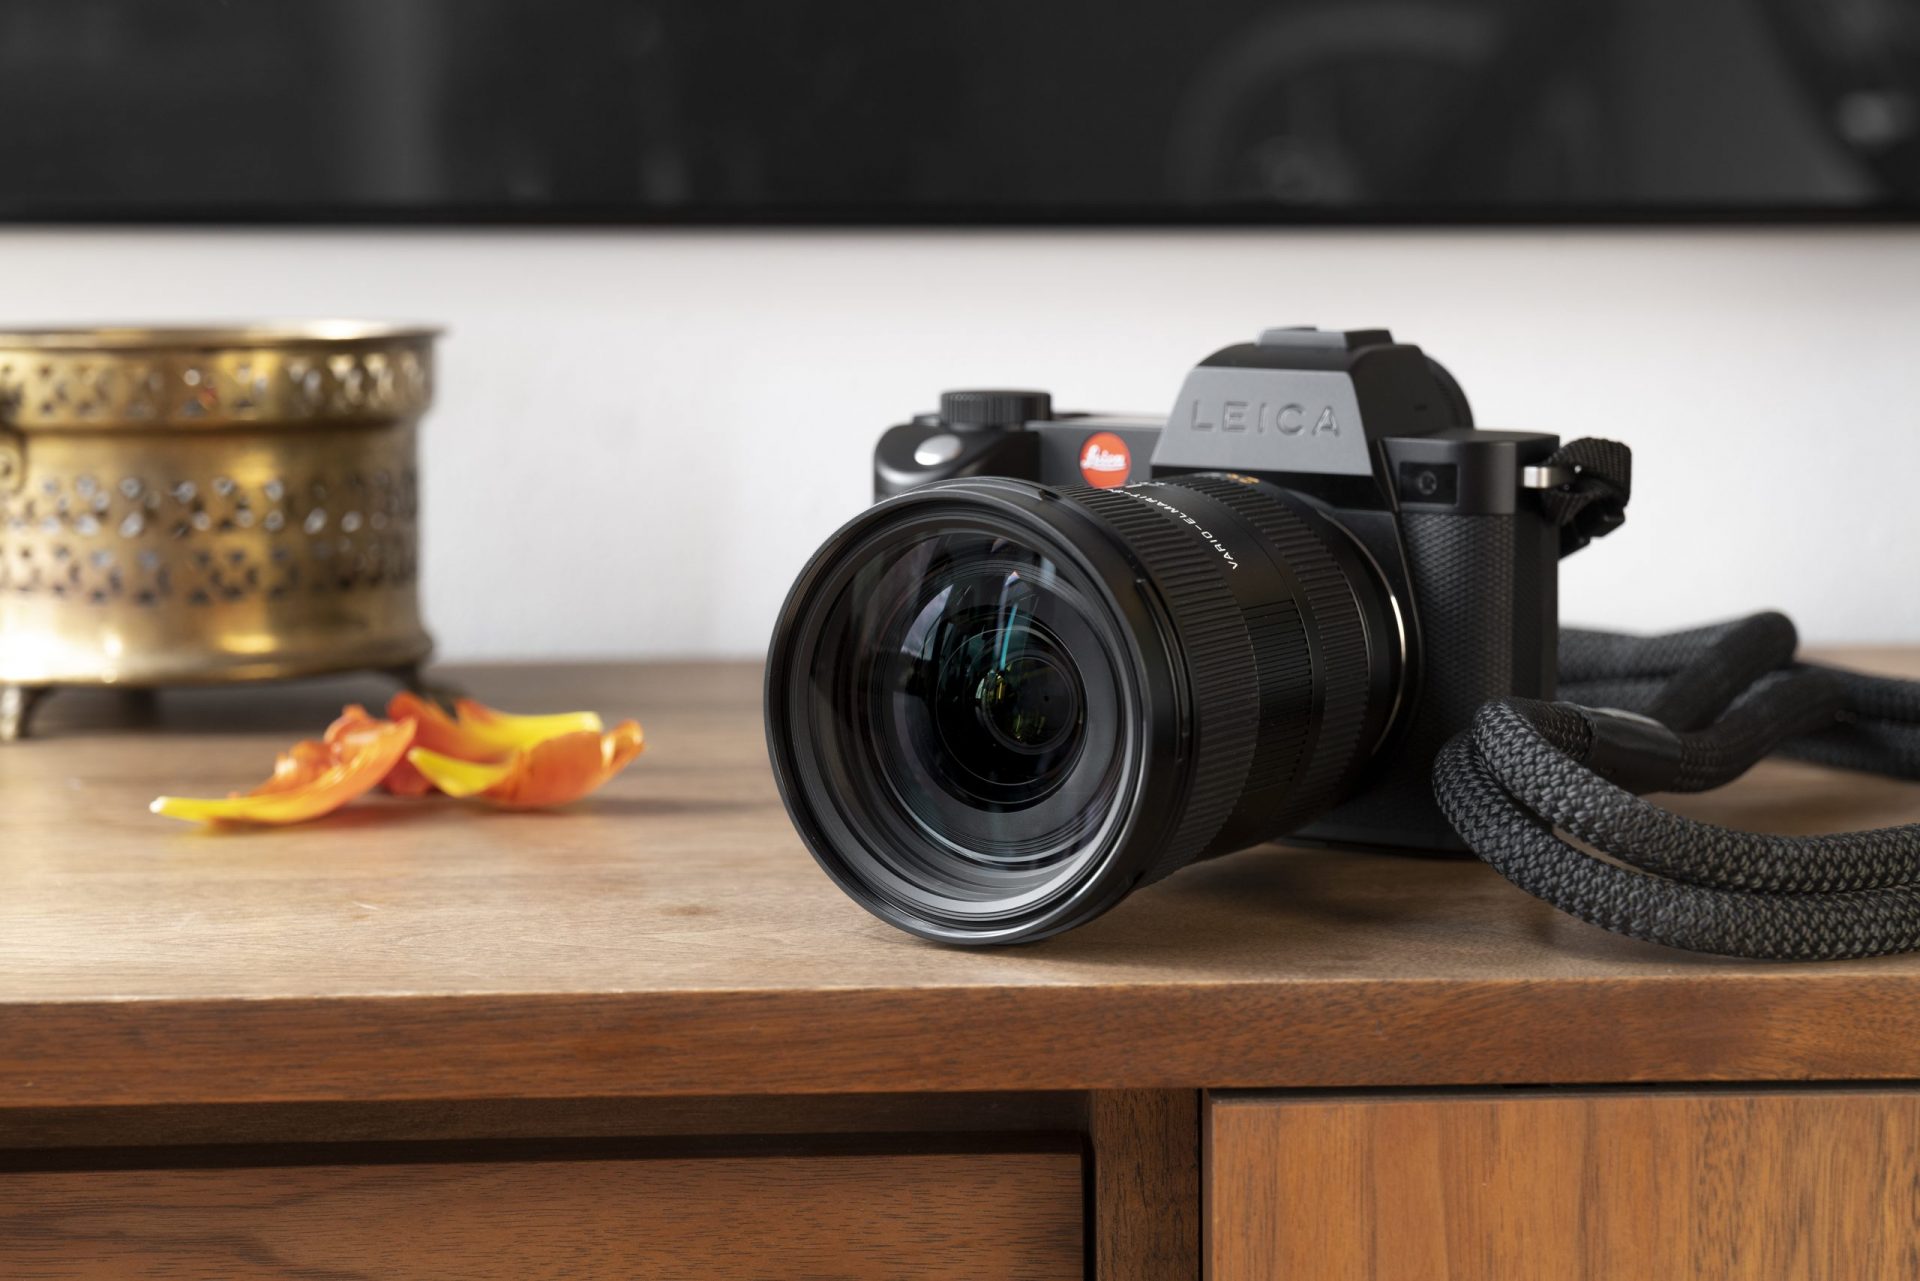 Leica Vario-Elmarit-SL 24-70 mm f/2.8 ASPH